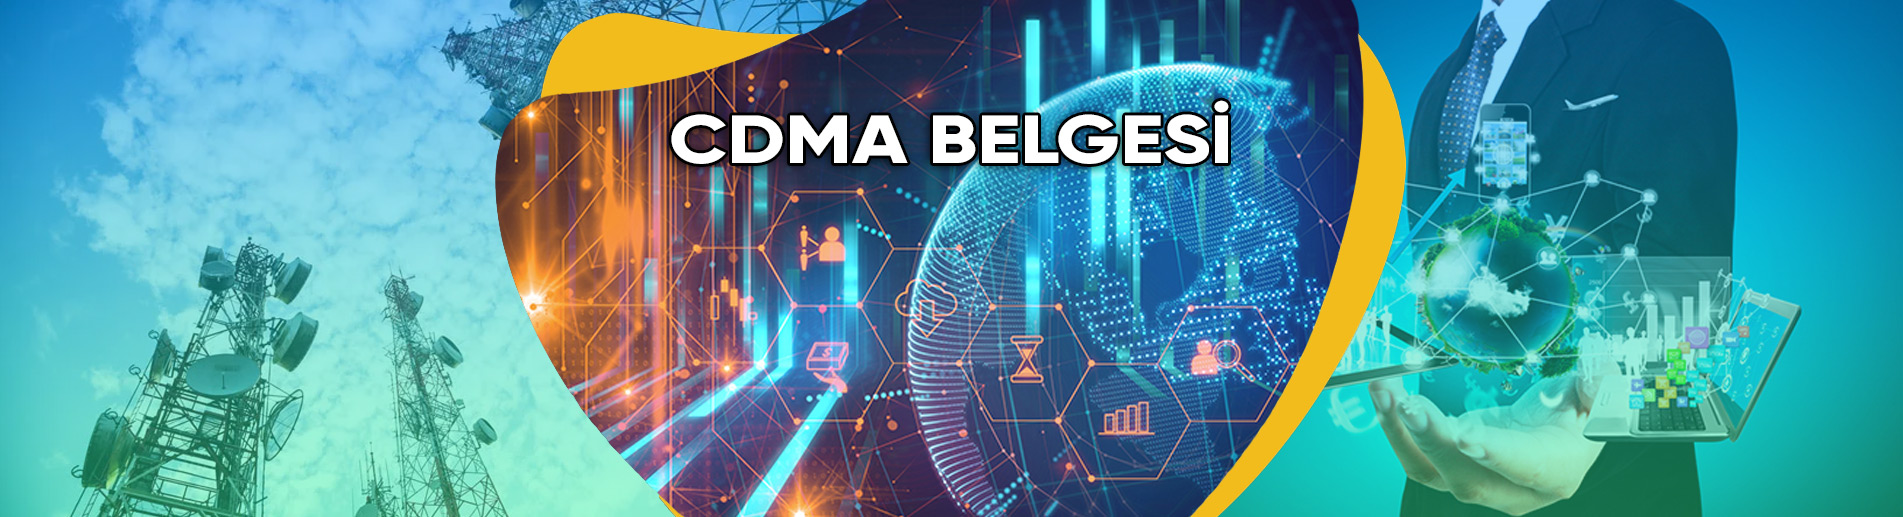 CDMA Belgesi CDMA Testi ve Belgelendirme